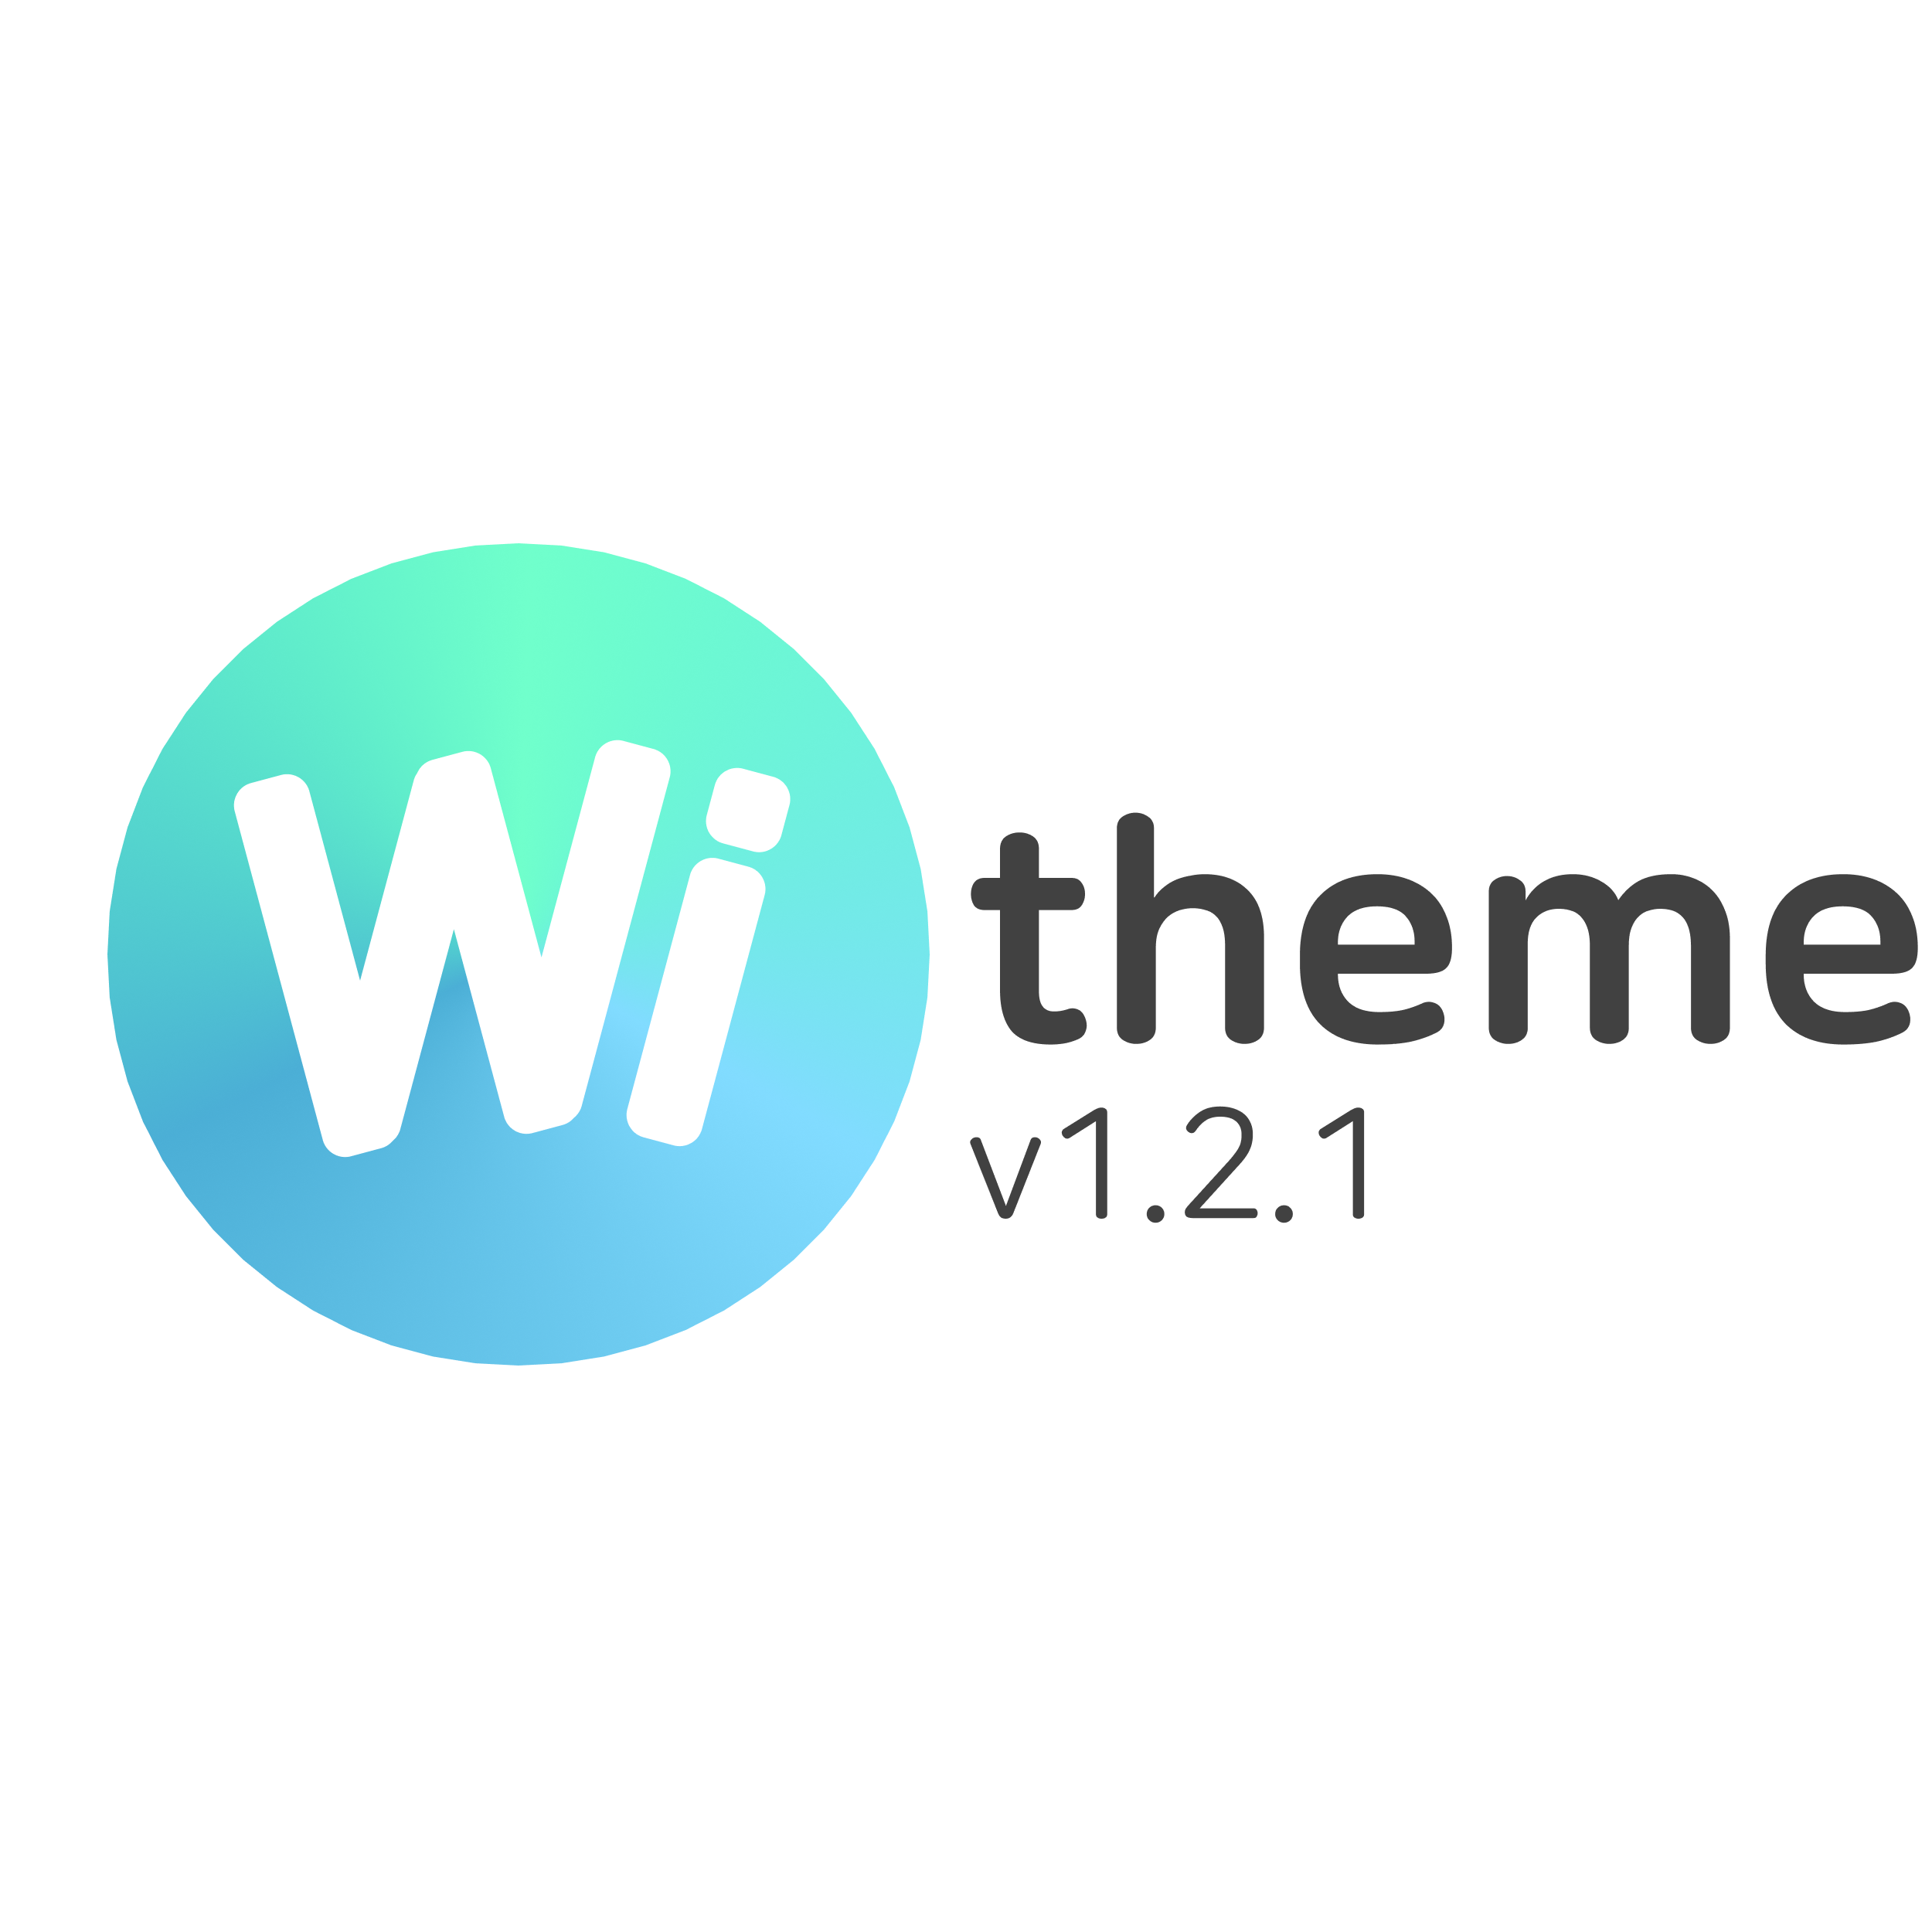 Wi theme 1.2.1 업데이트 사항 11